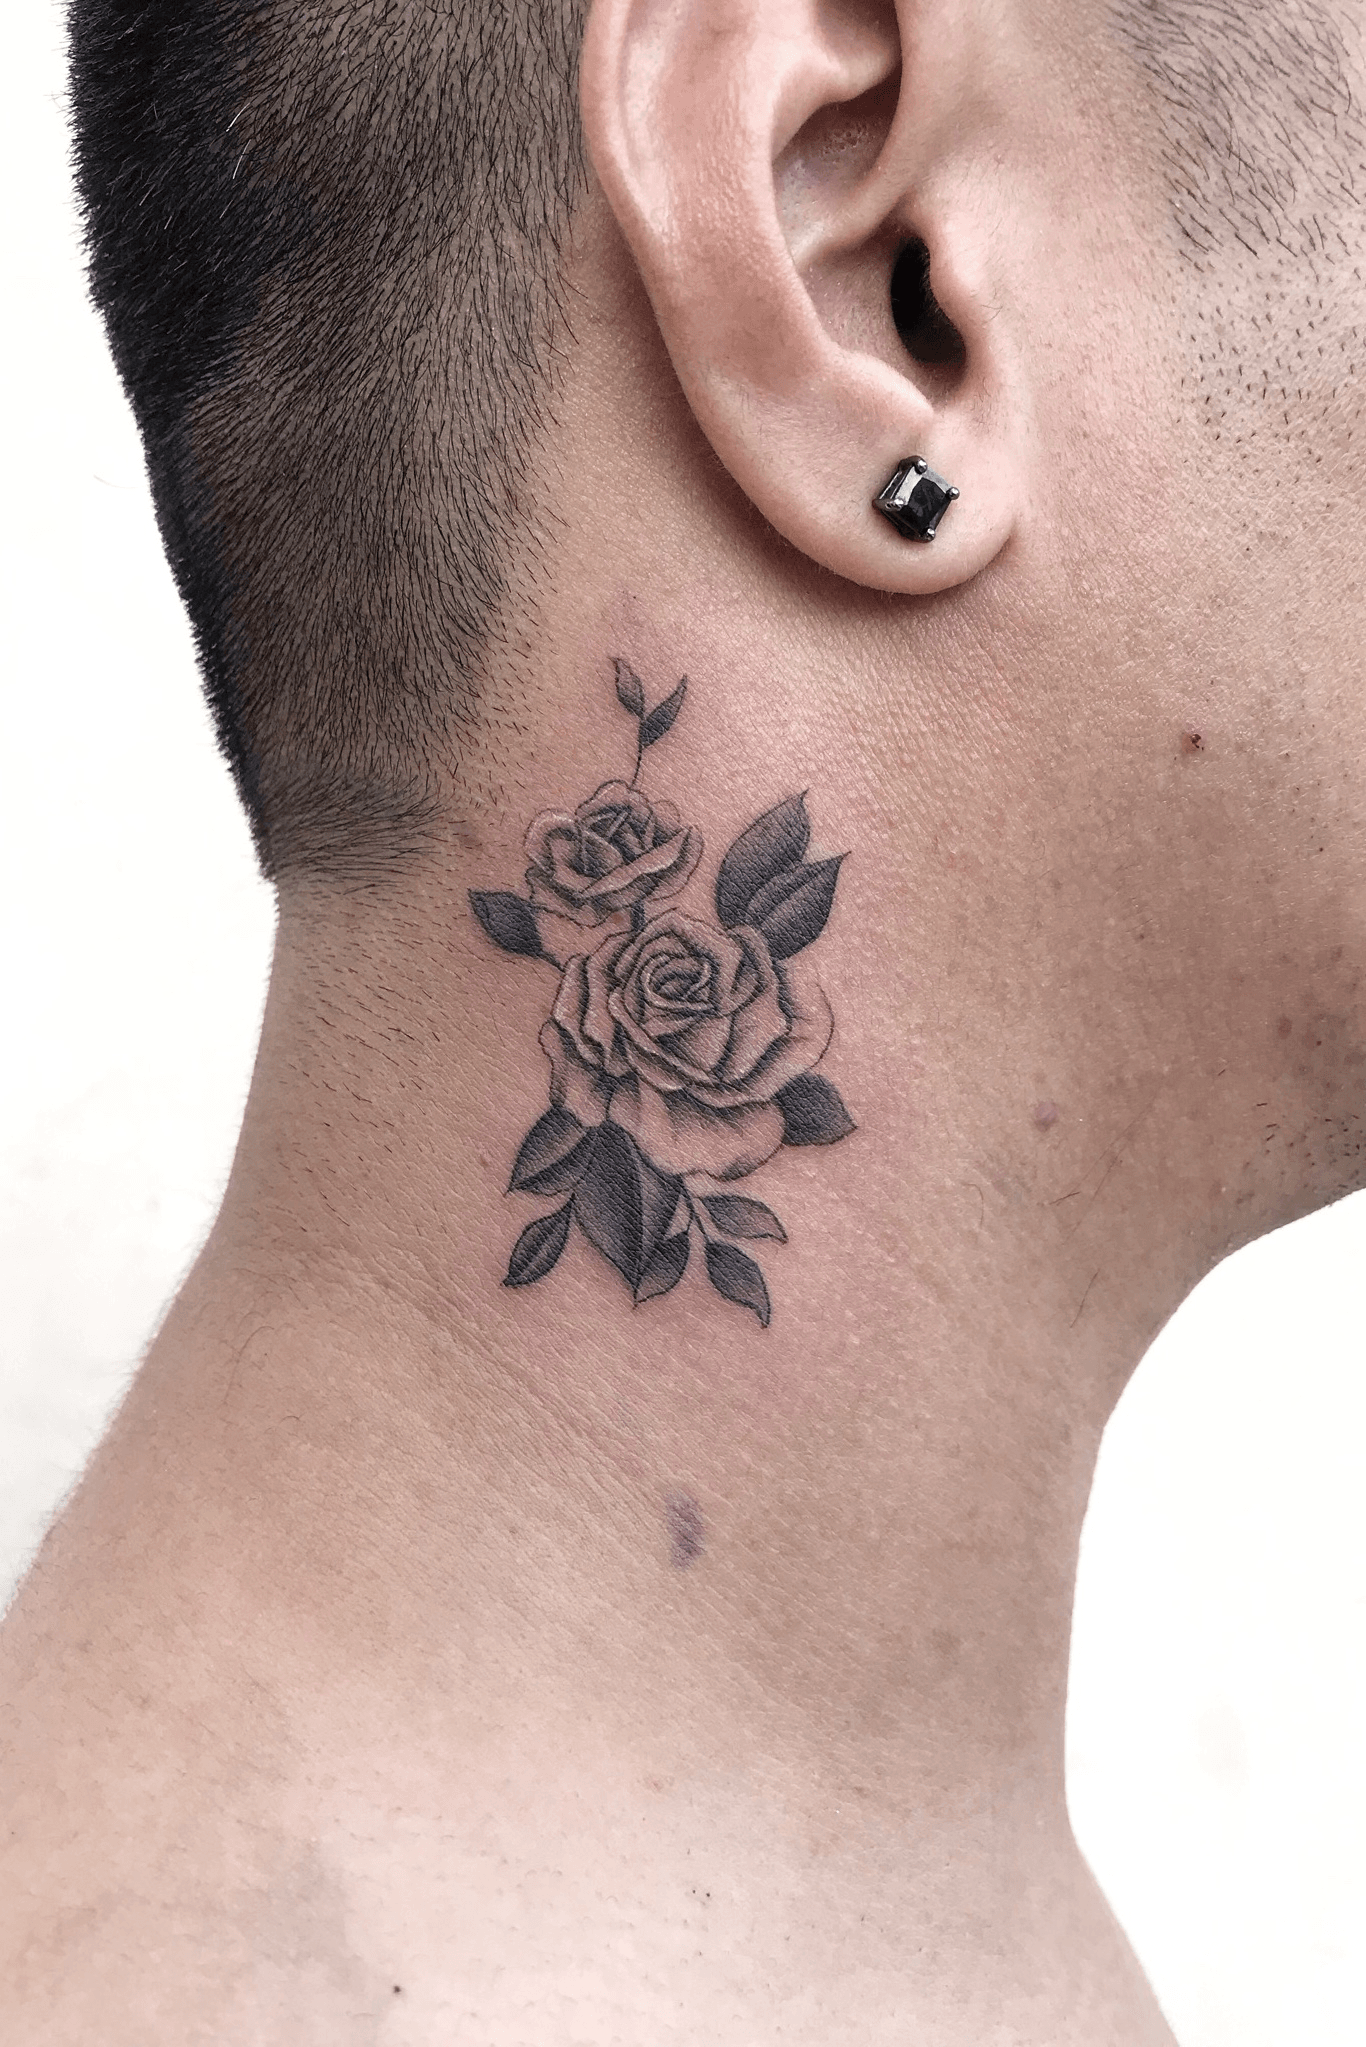 Neck Rose Tattoo  Best tattoo design ideas  Tatuaje de rosa en el cuello  Tatuajes de rosas Tatuajes chiquitos